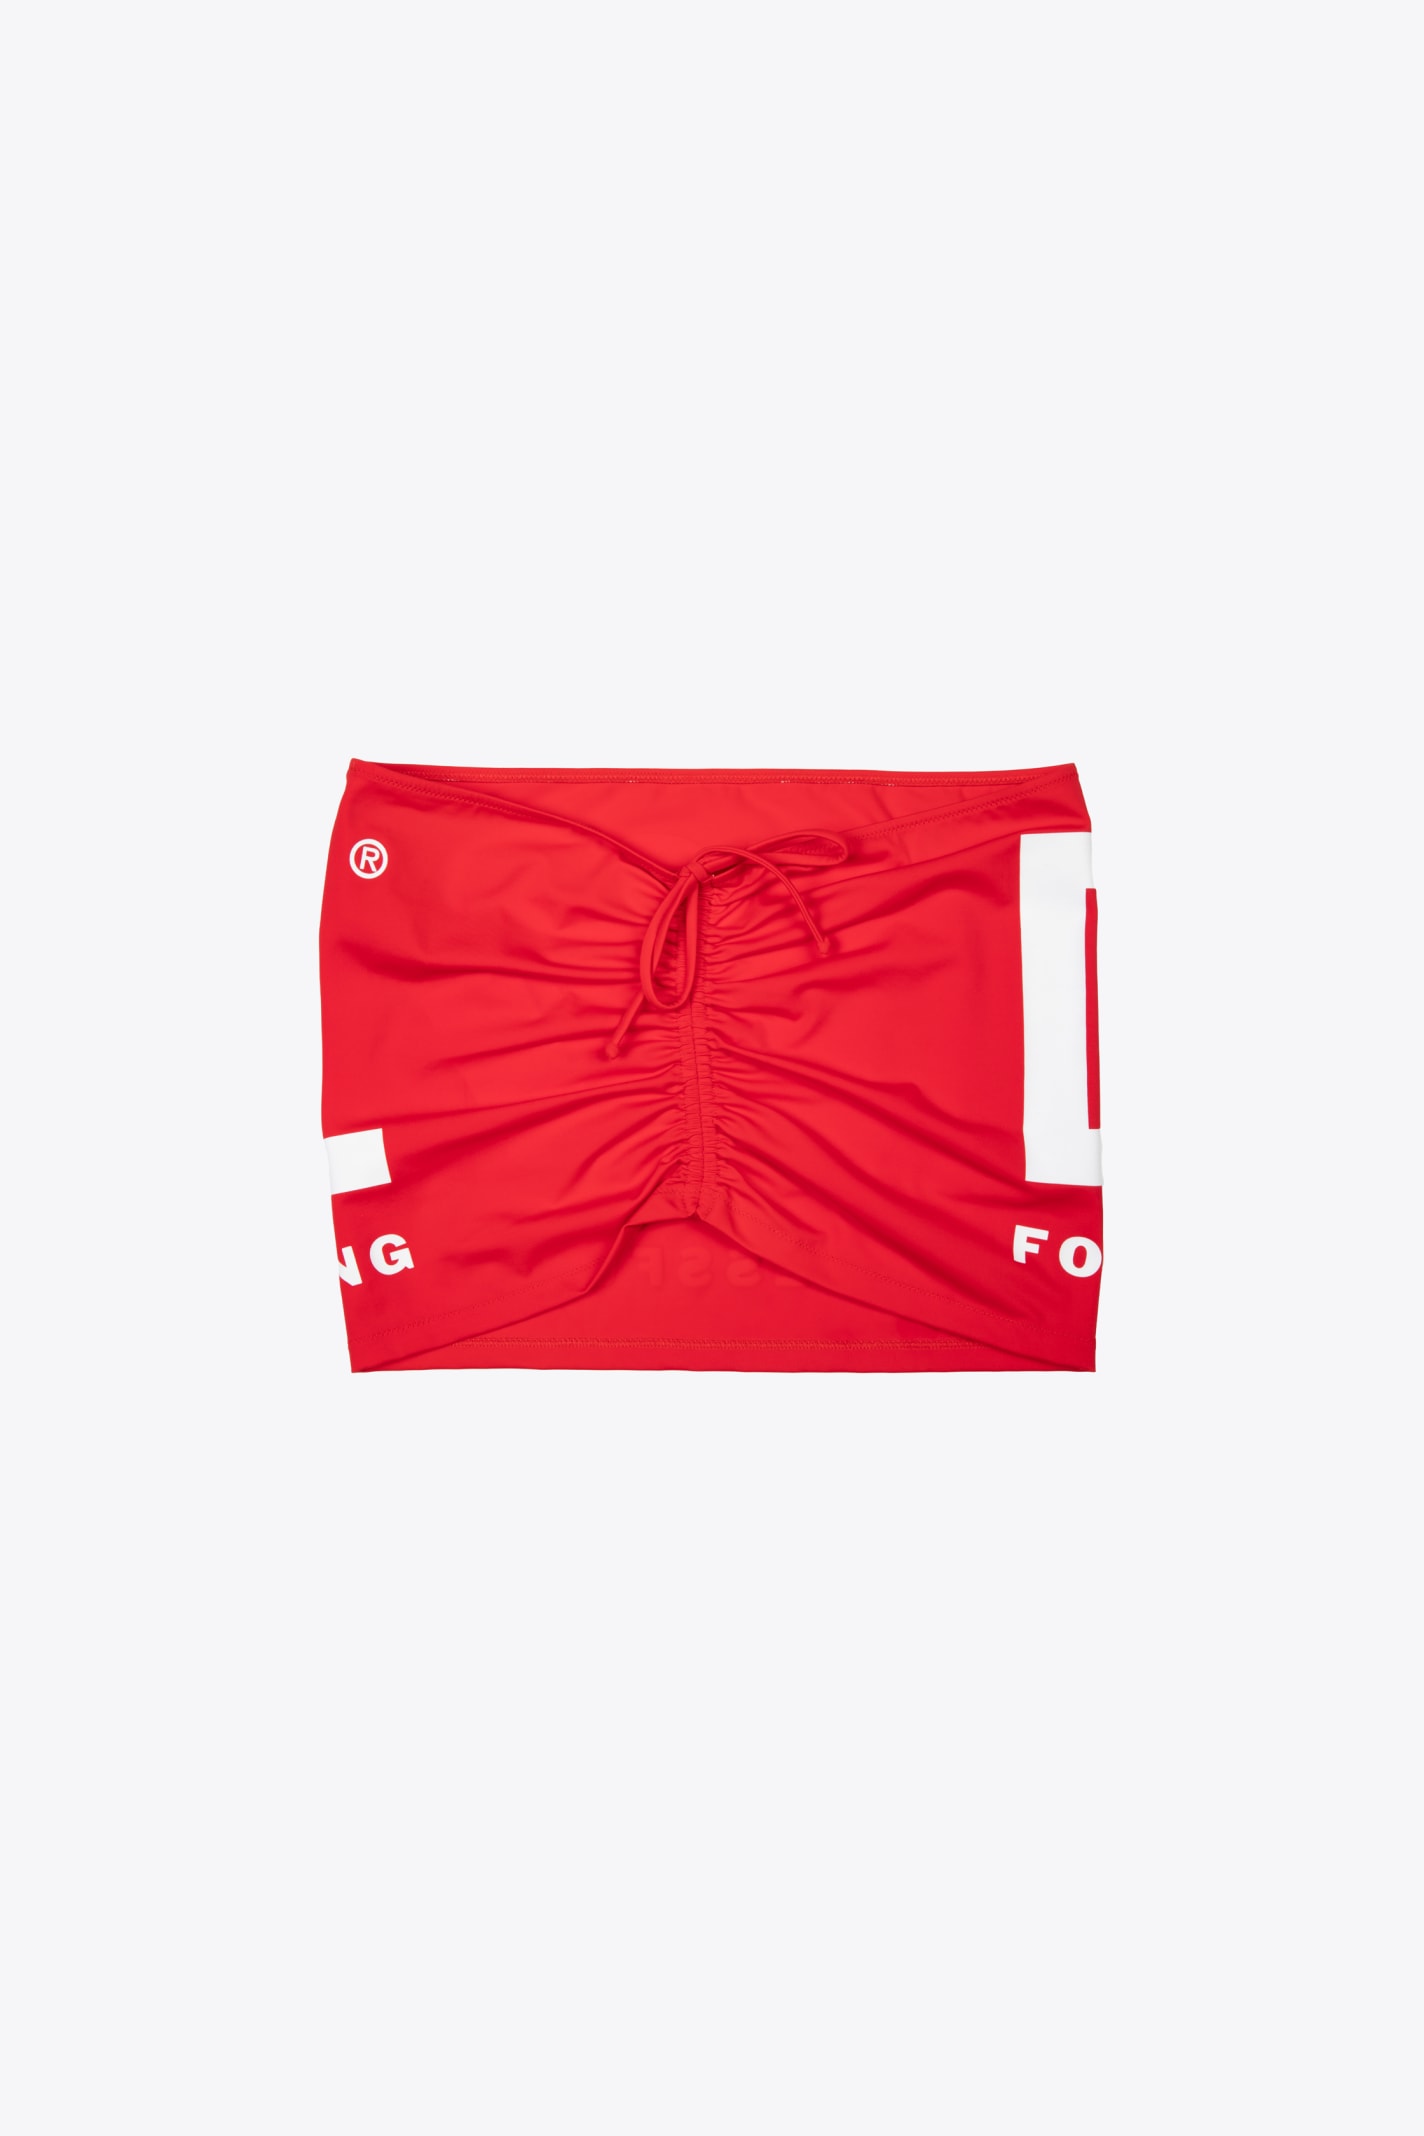 Bfsk-jasmine Red Lycra Mini Skirt With Logo - Bfsk Jasmine